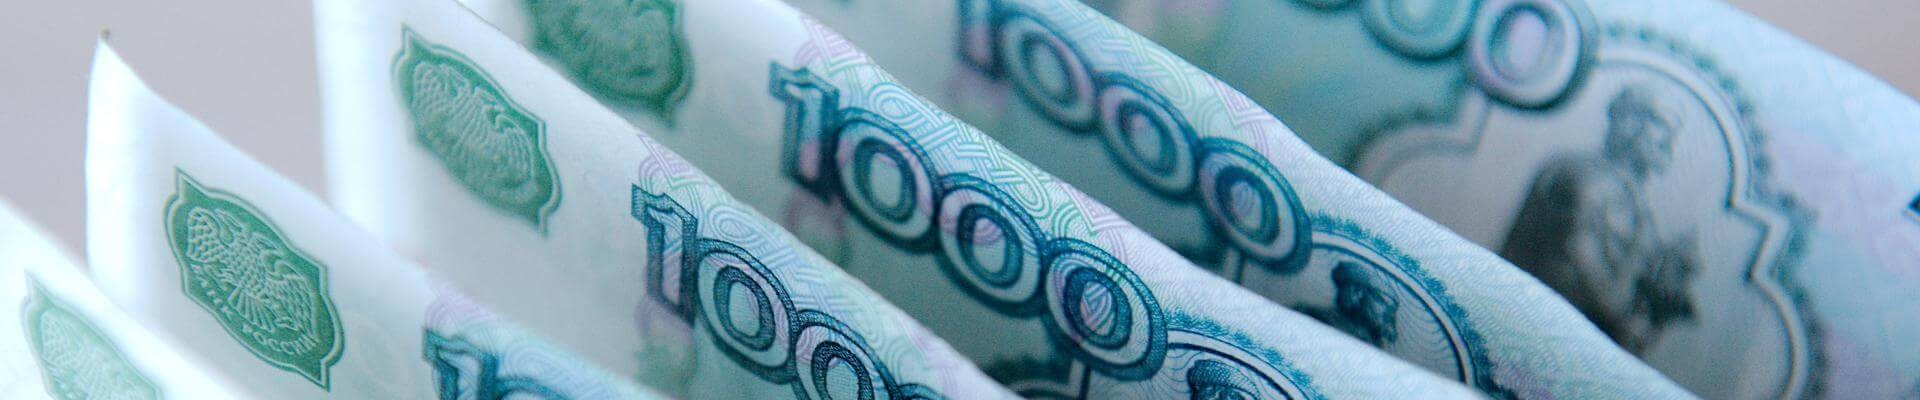 Банк России пояснил как избежать возникновения «пузырей» при ускоренном росте выдачи кредитов